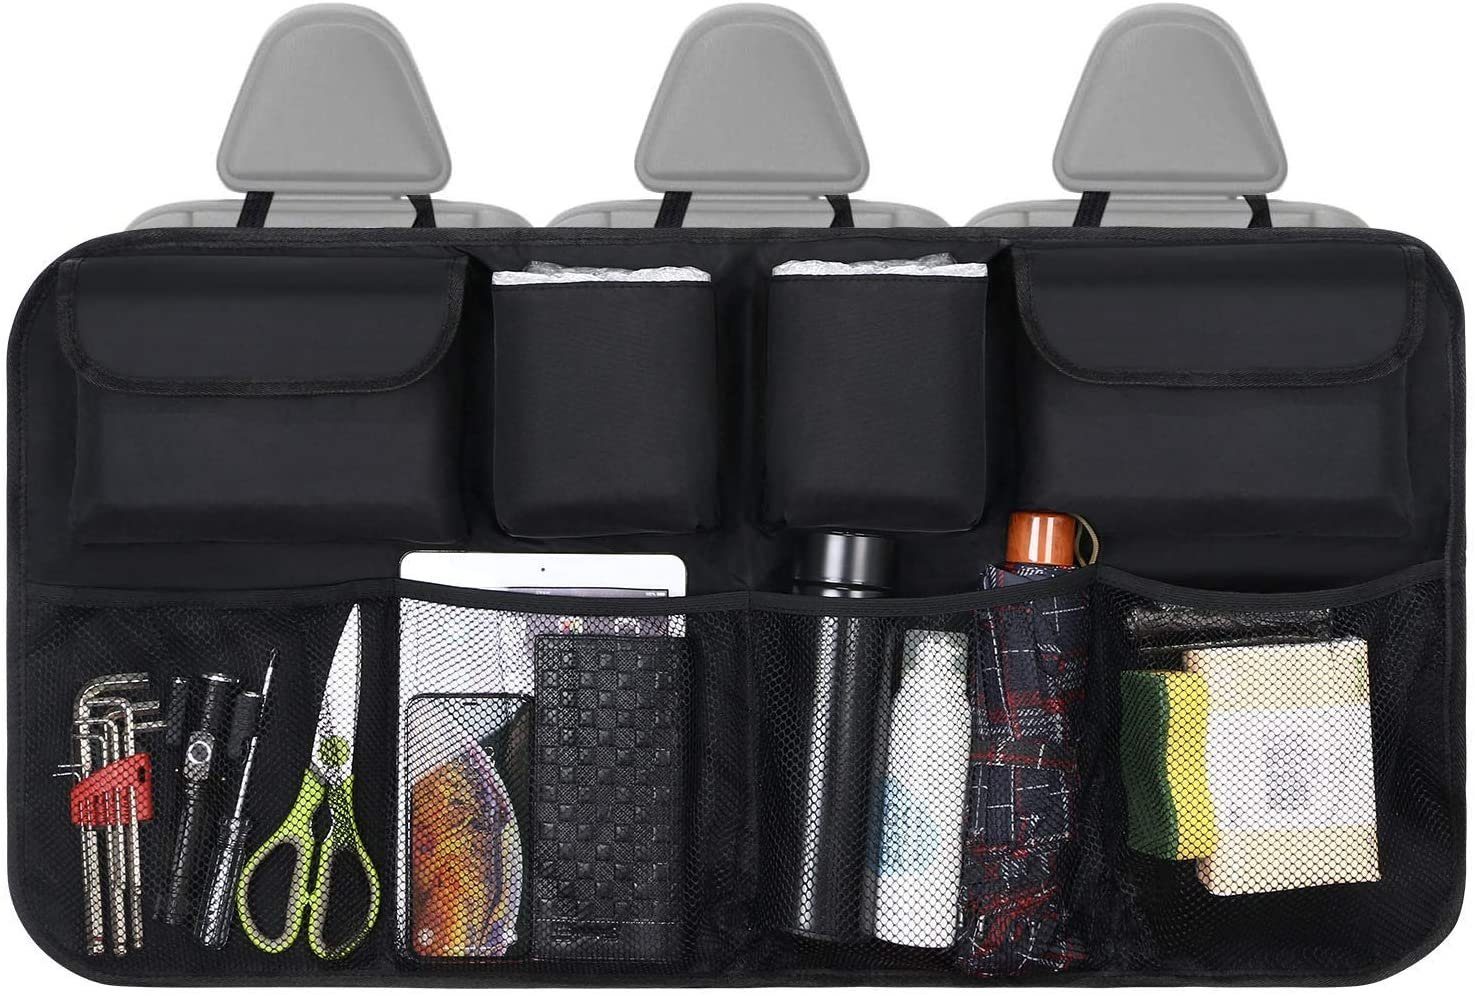 Auto KFZ Rücksitz Aufbewahrung Organizer Tasche mit Netztasche Kofferraum